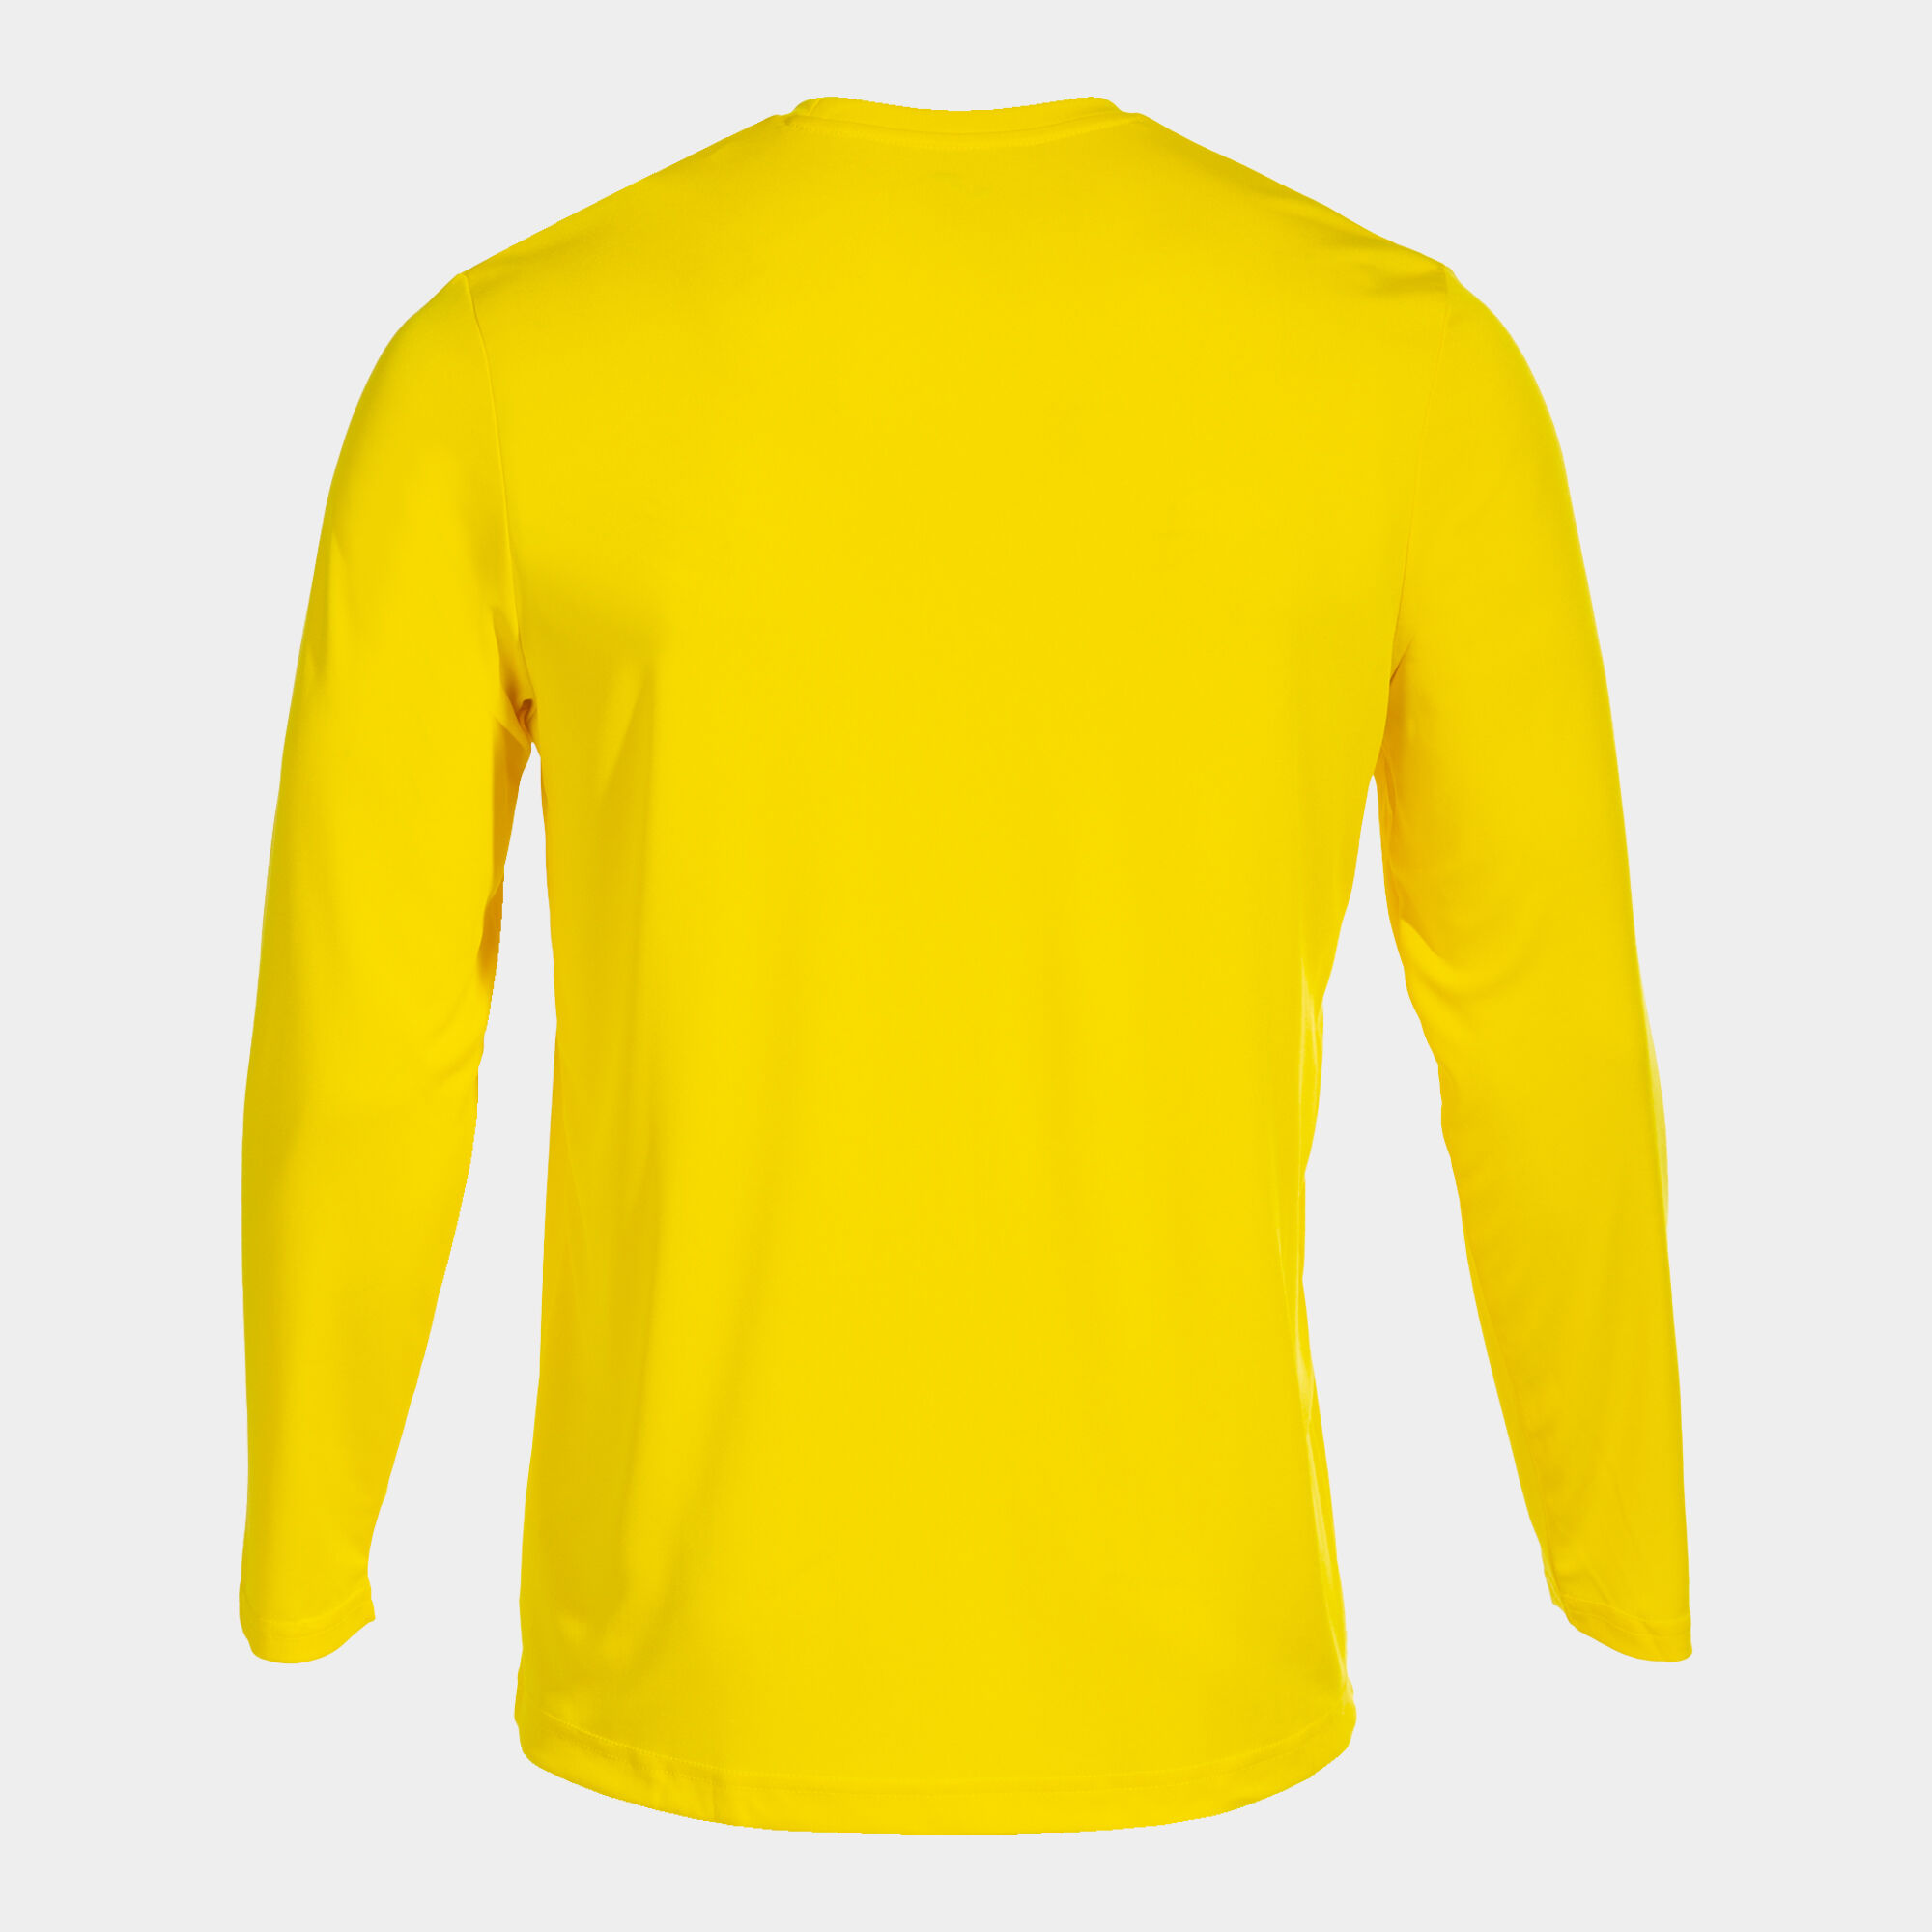 Camiseta amarilla para hombre, color amarillo